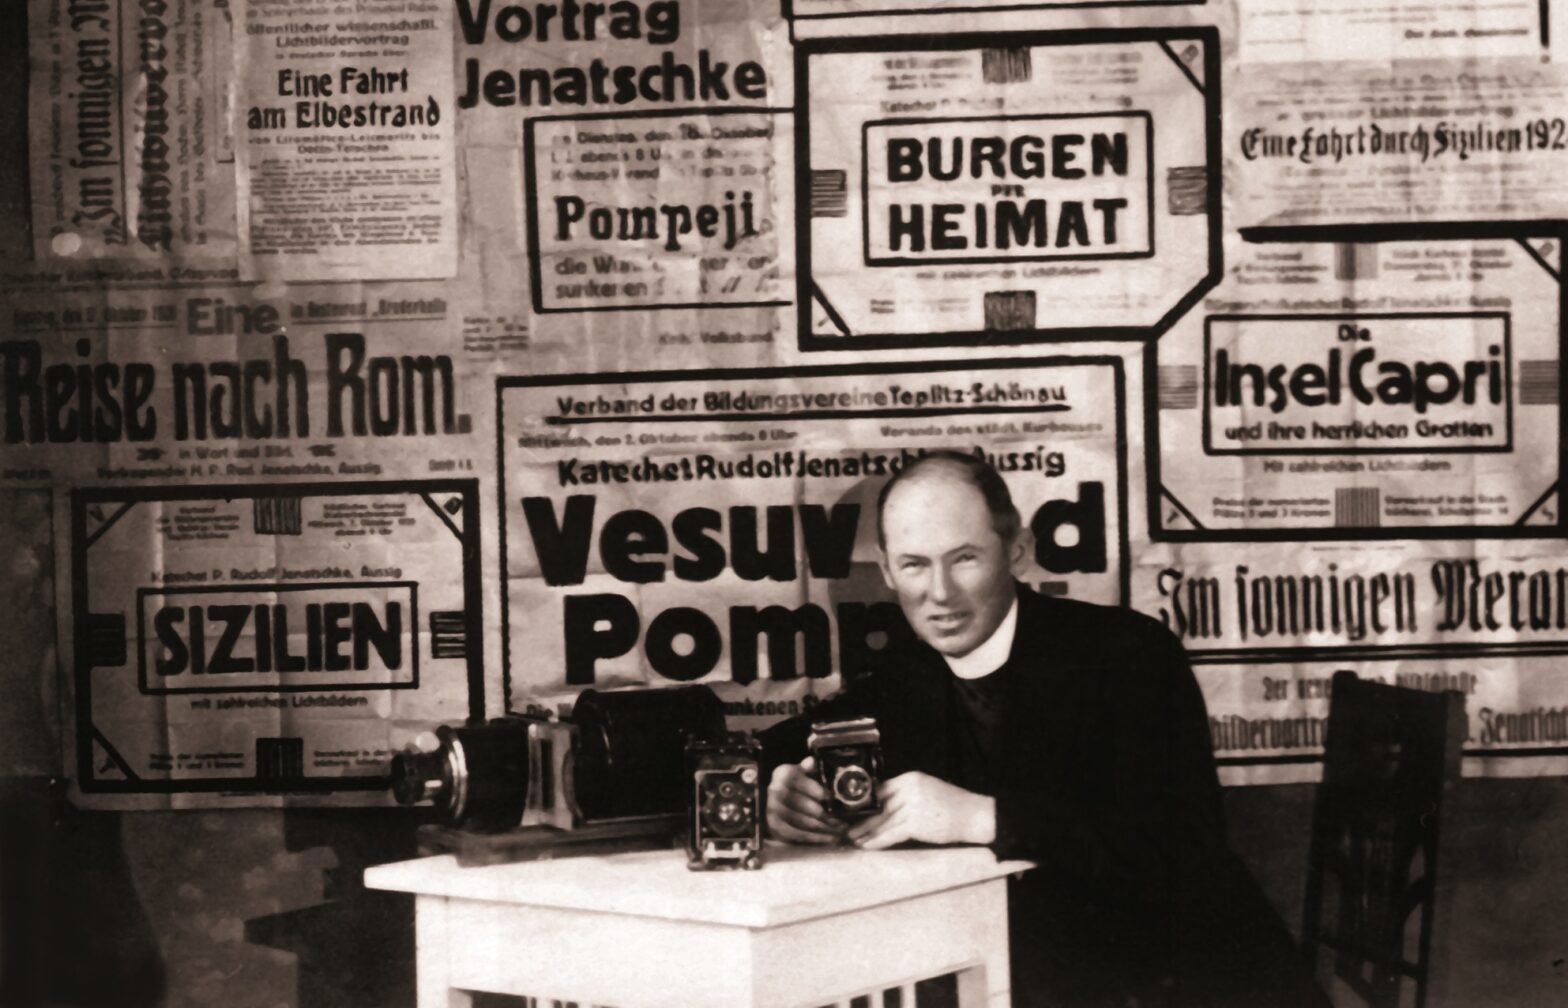 Das Porträt mit Selbstauslöser zeigt Rudolf Jenatschke vor Plakaten seiner Lichtbildvorträge - Foto: Stadtmuseum Ústí nad Labem